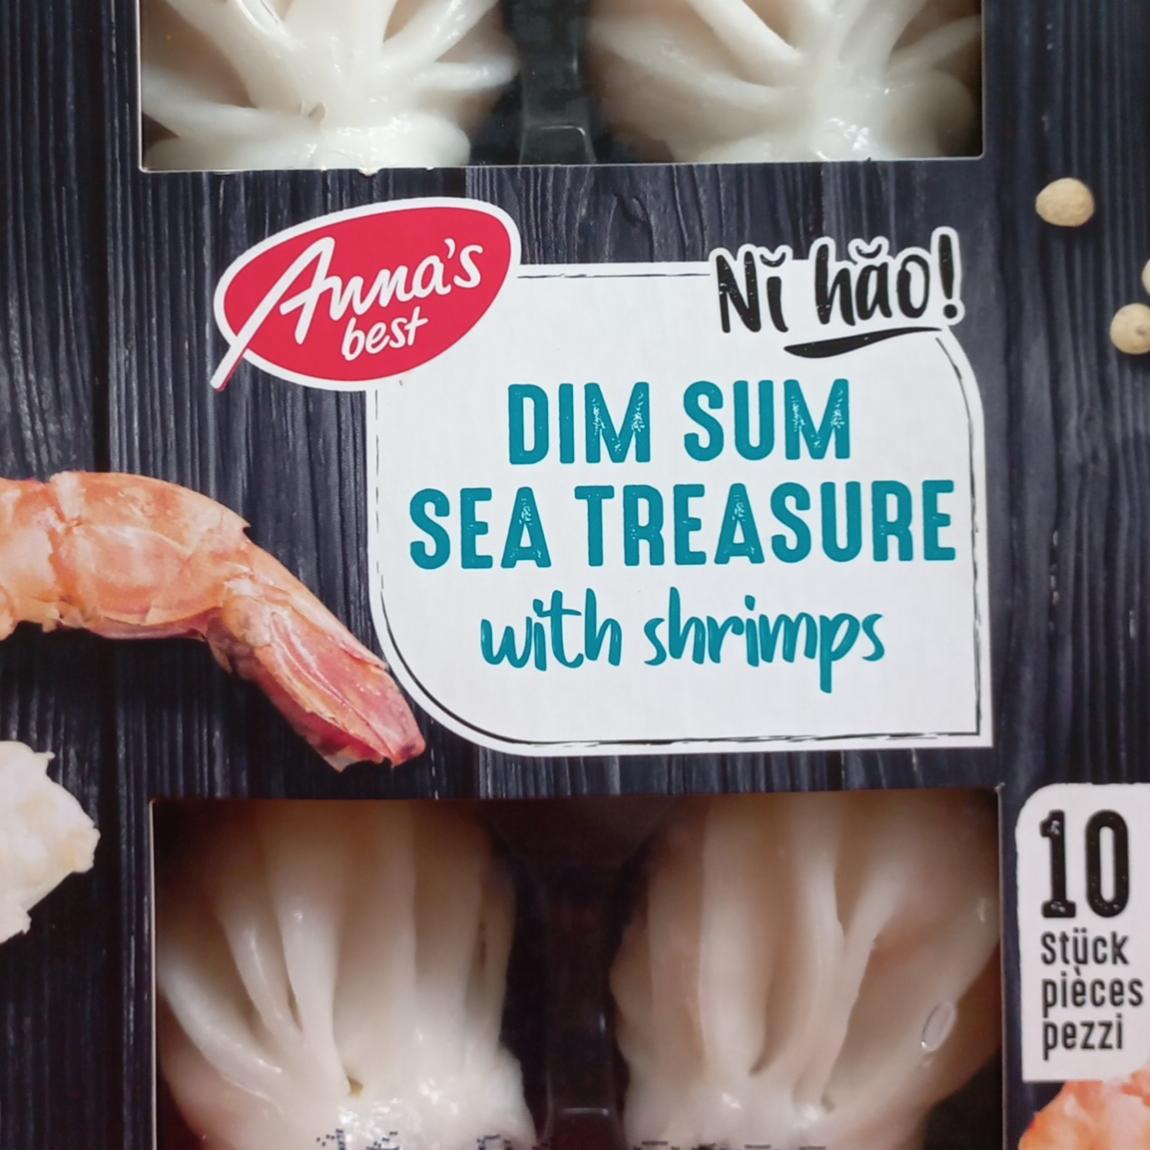 Fotografie - Dim sum sea treasure with shrimps Anna's best